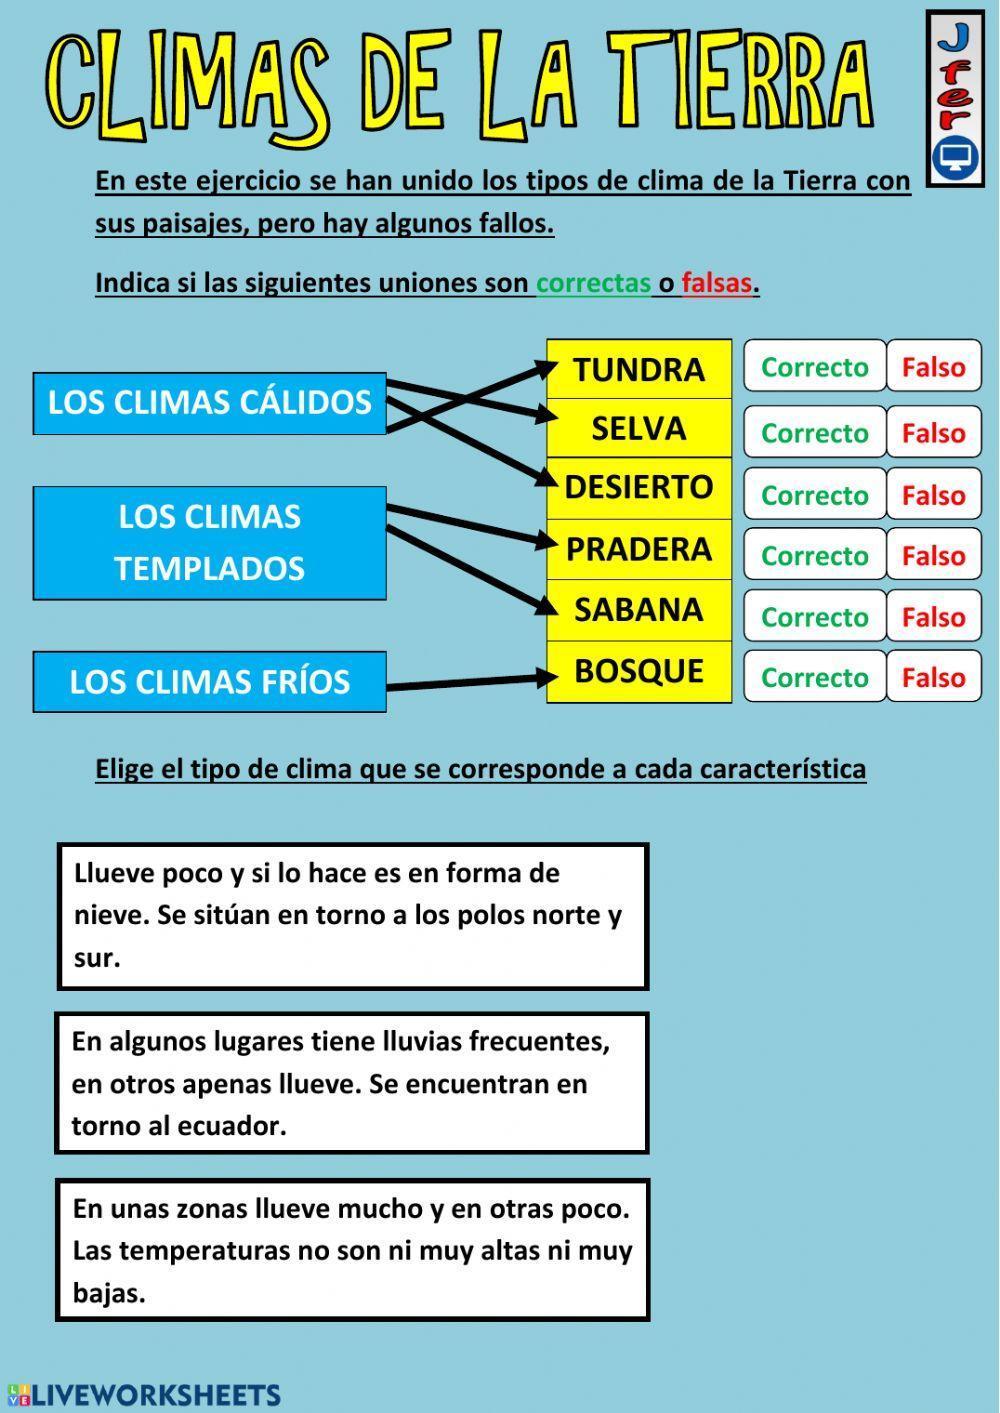 El clima de España y la Tierra